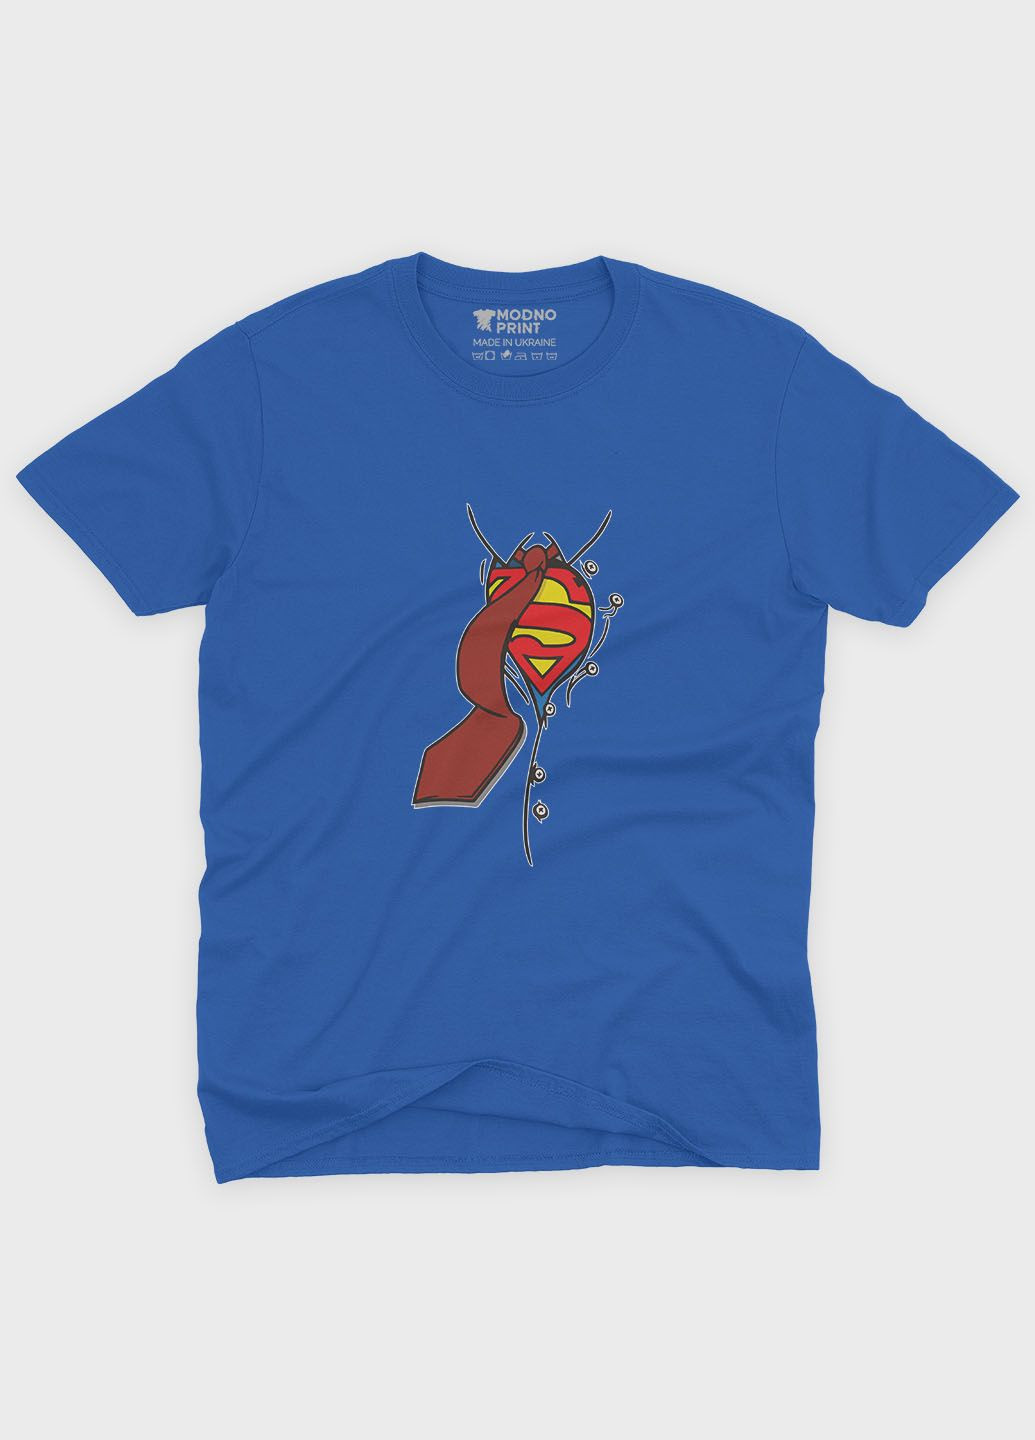 Синяя демисезонная футболка для девочки с принтом супергероя - супермэн (ts001-1-grr-006-009-002-g) Modno